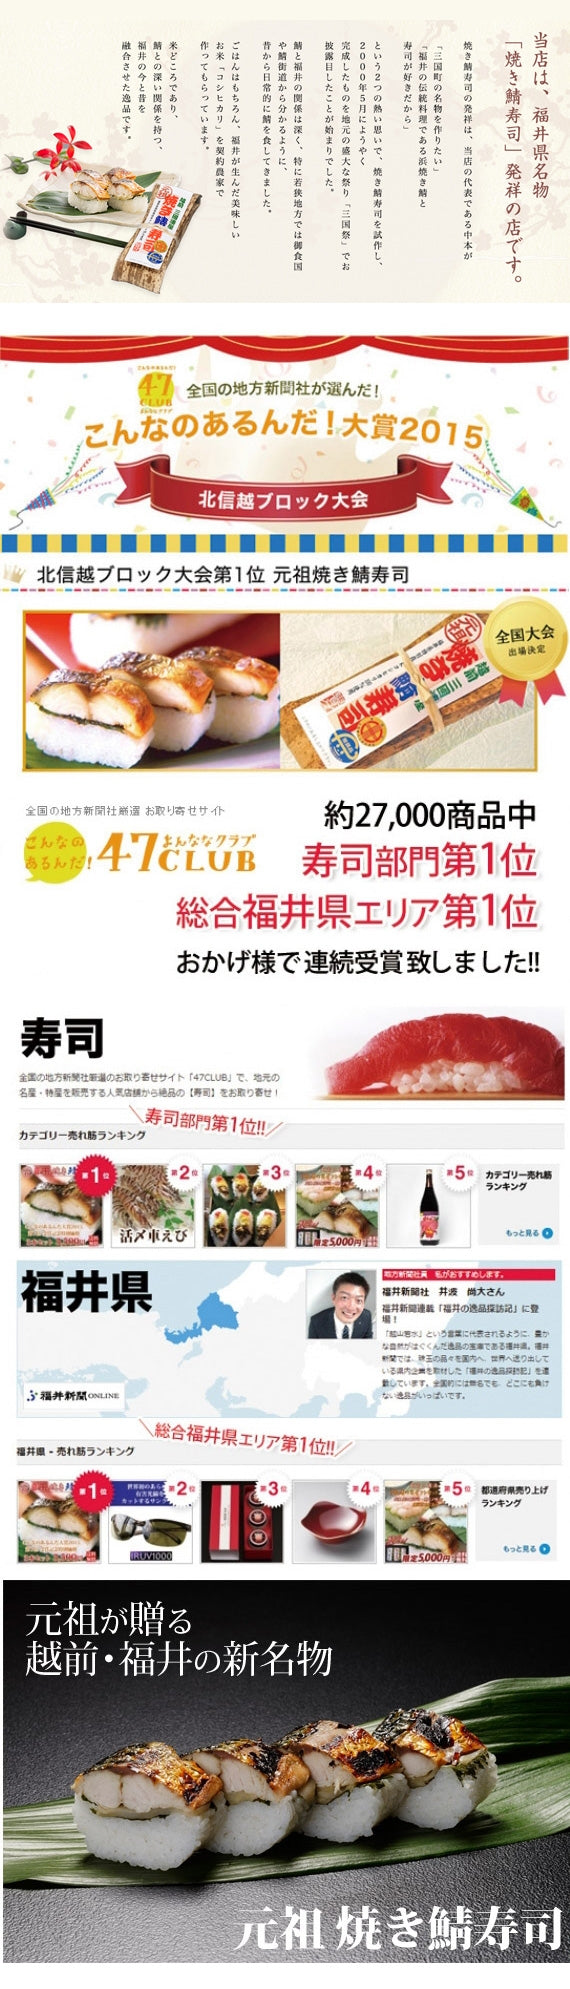 【送料無料】元祖焼き鯖寿司　[5本セット]　当店発祥「焼き鯖寿司」の元祖の味はここだけ！<ランキング1位受賞>